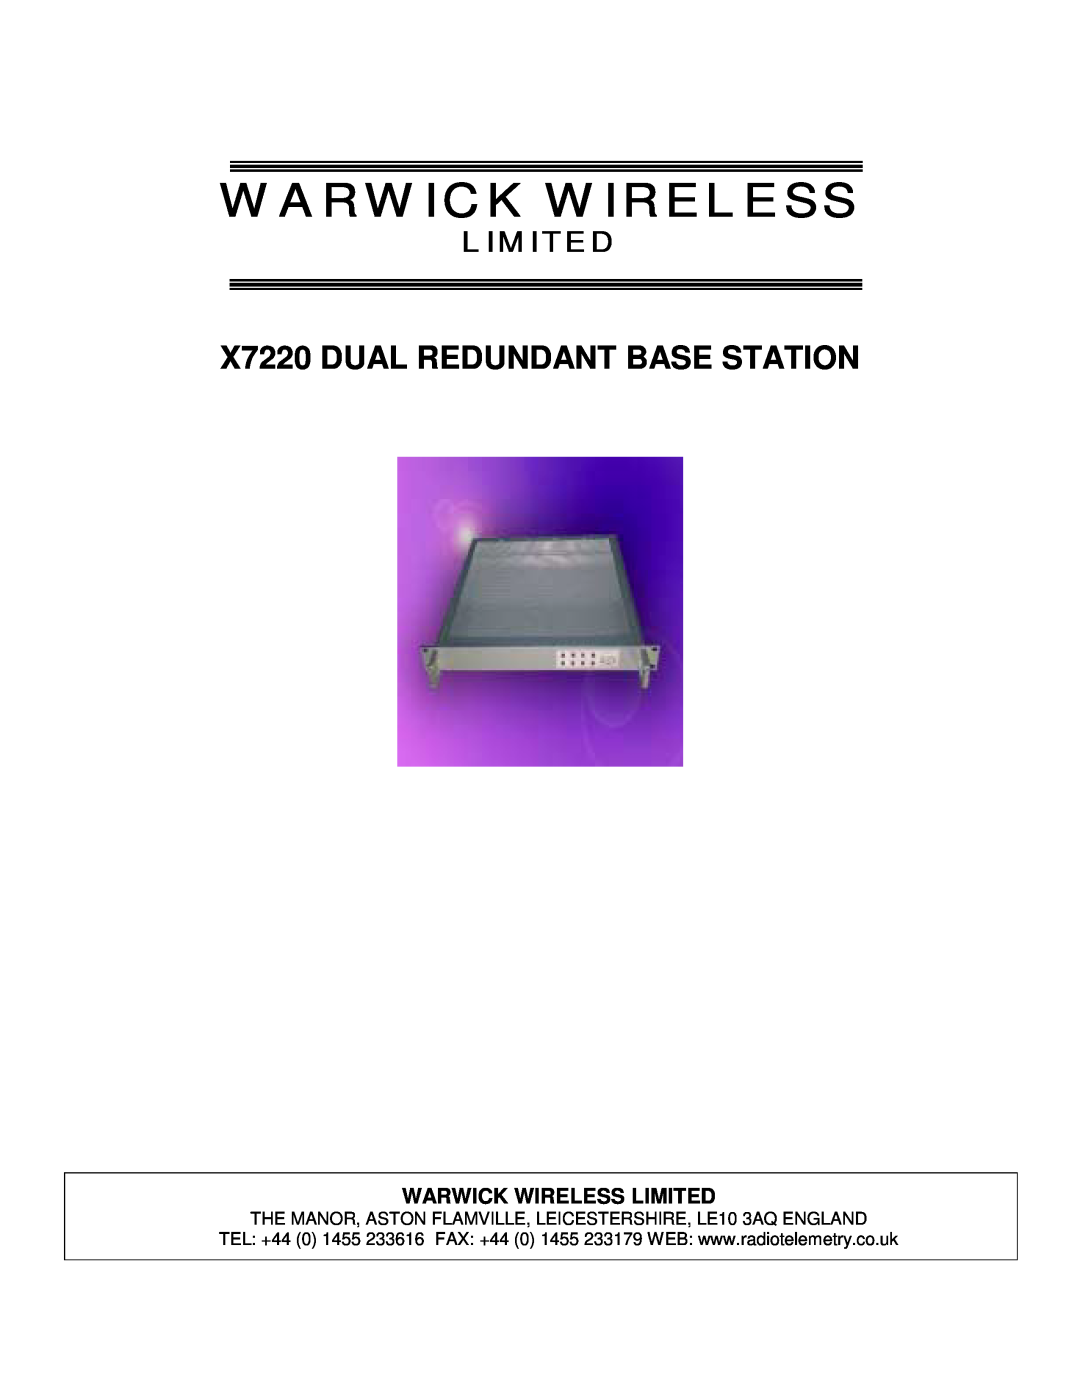 Warwick manual Warwick Wireless Limited, X7220 DUAL REDUNDANT BASE STATION 